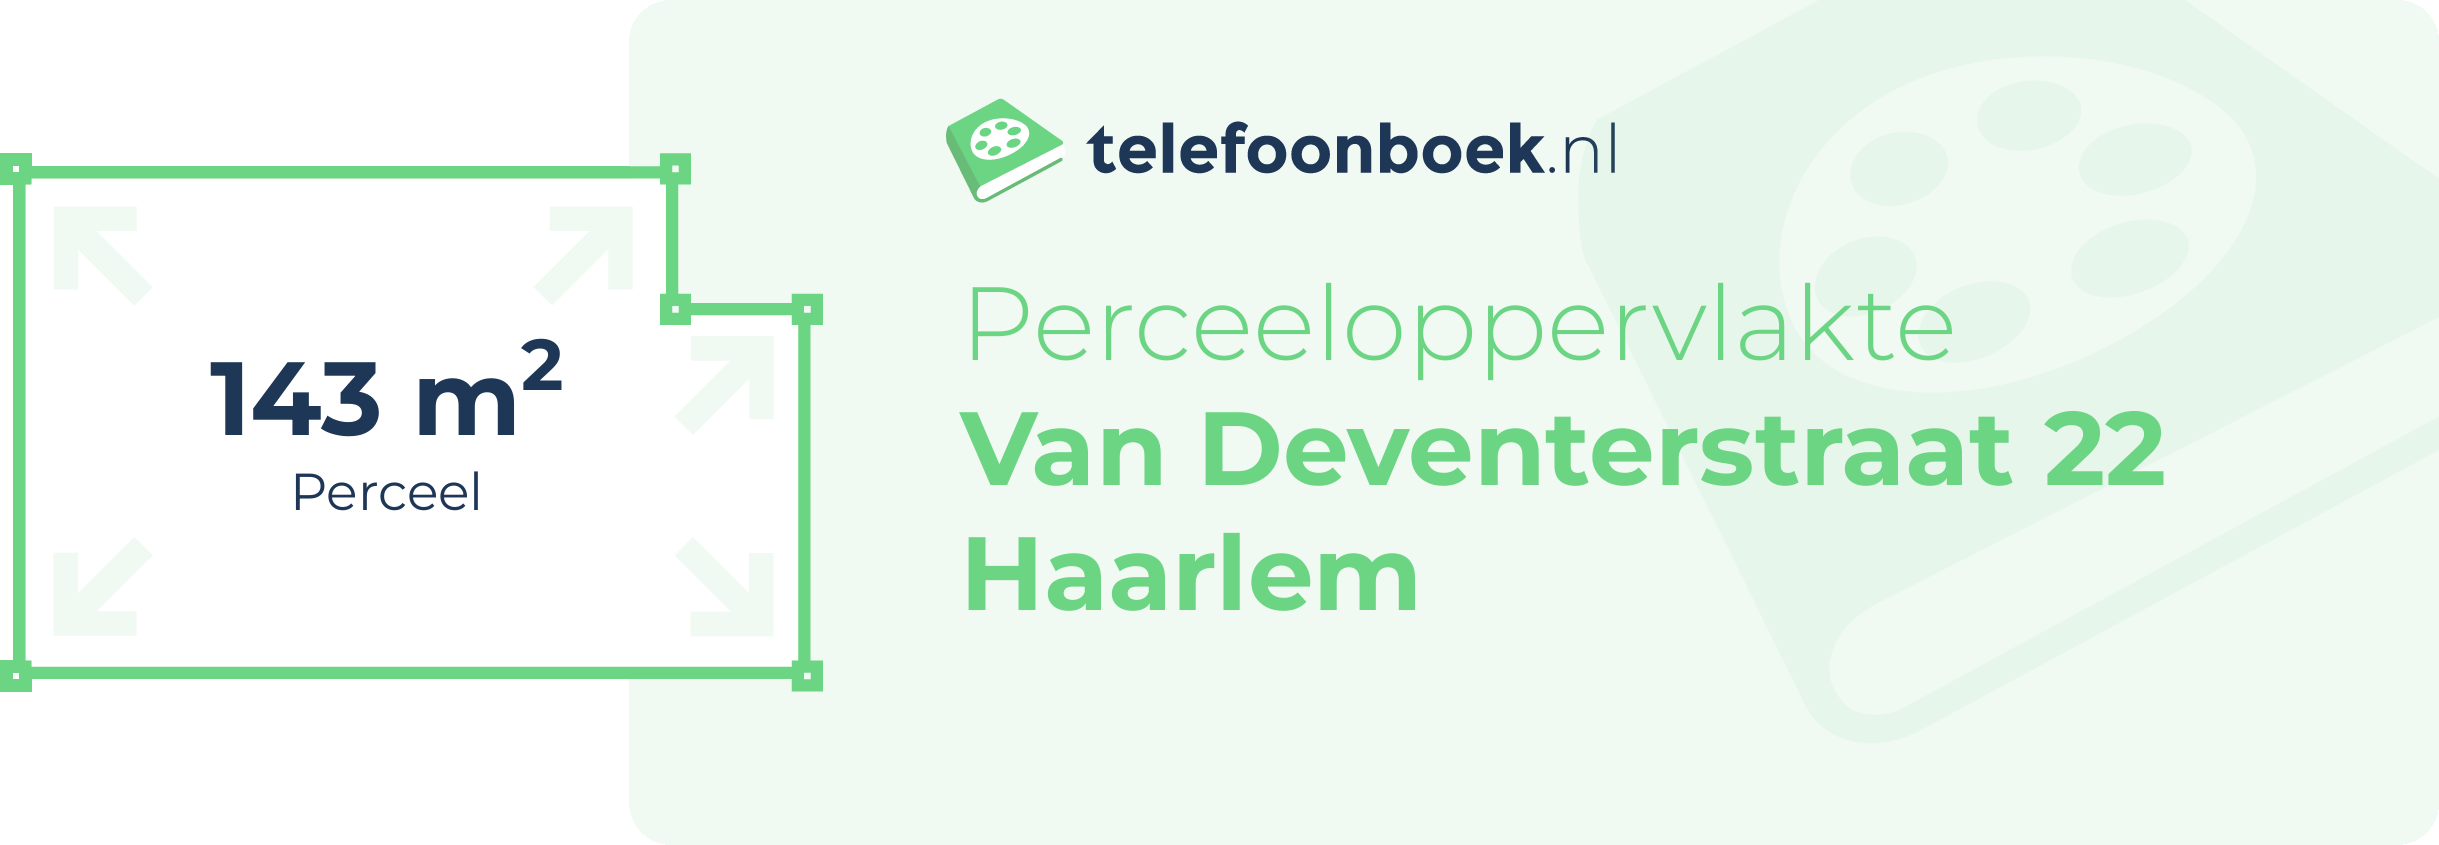 Perceeloppervlakte Van Deventerstraat 22 Haarlem